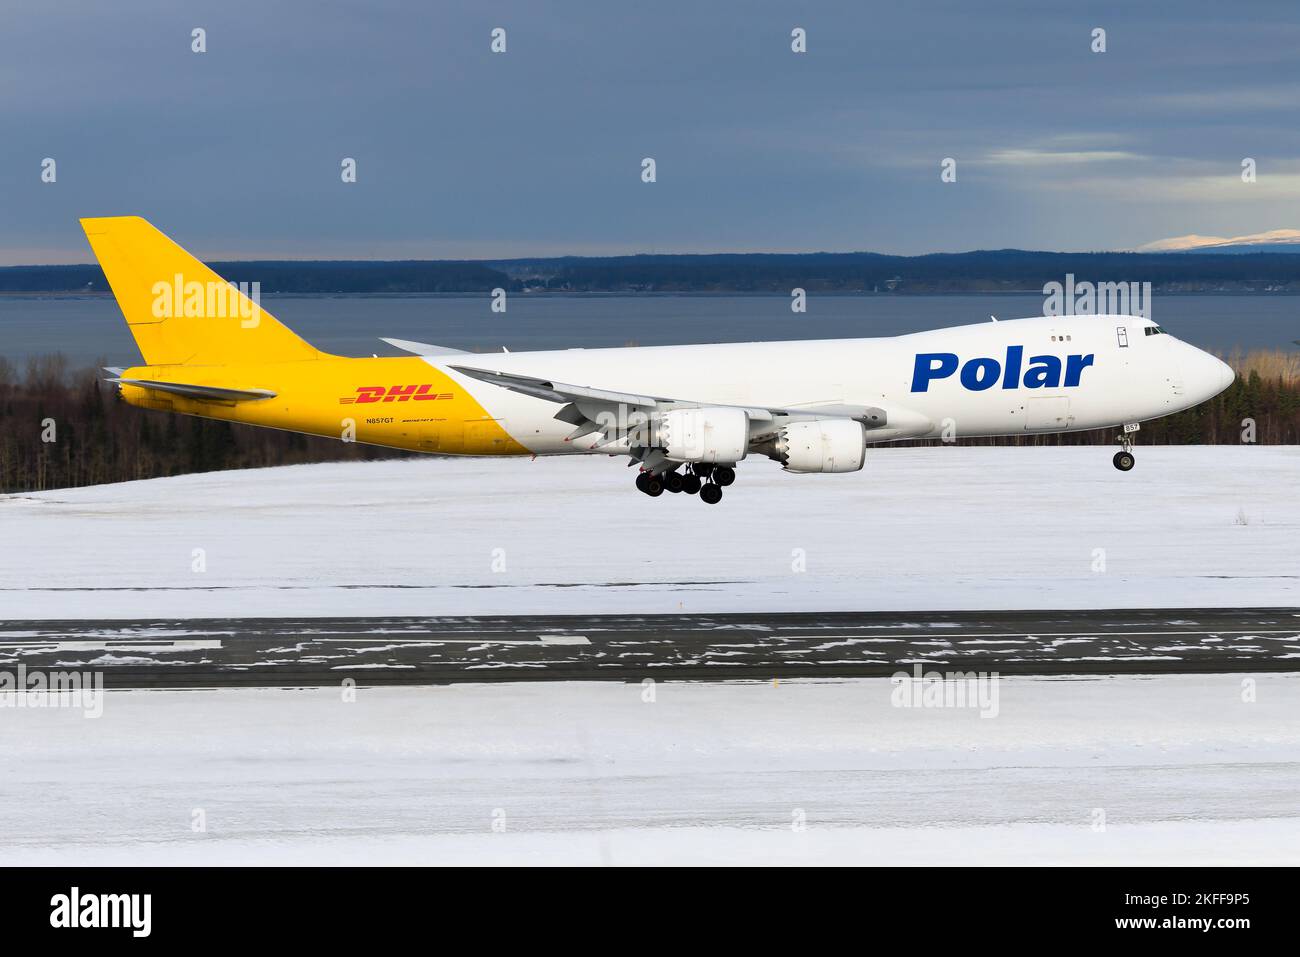 Polar Air Cargo Boeing 747-8F Landung am Flughafen Anchorage. Flugzeug 747-8 für den Frachttransport von Polar Air. Ebene N857GT. Stockfoto